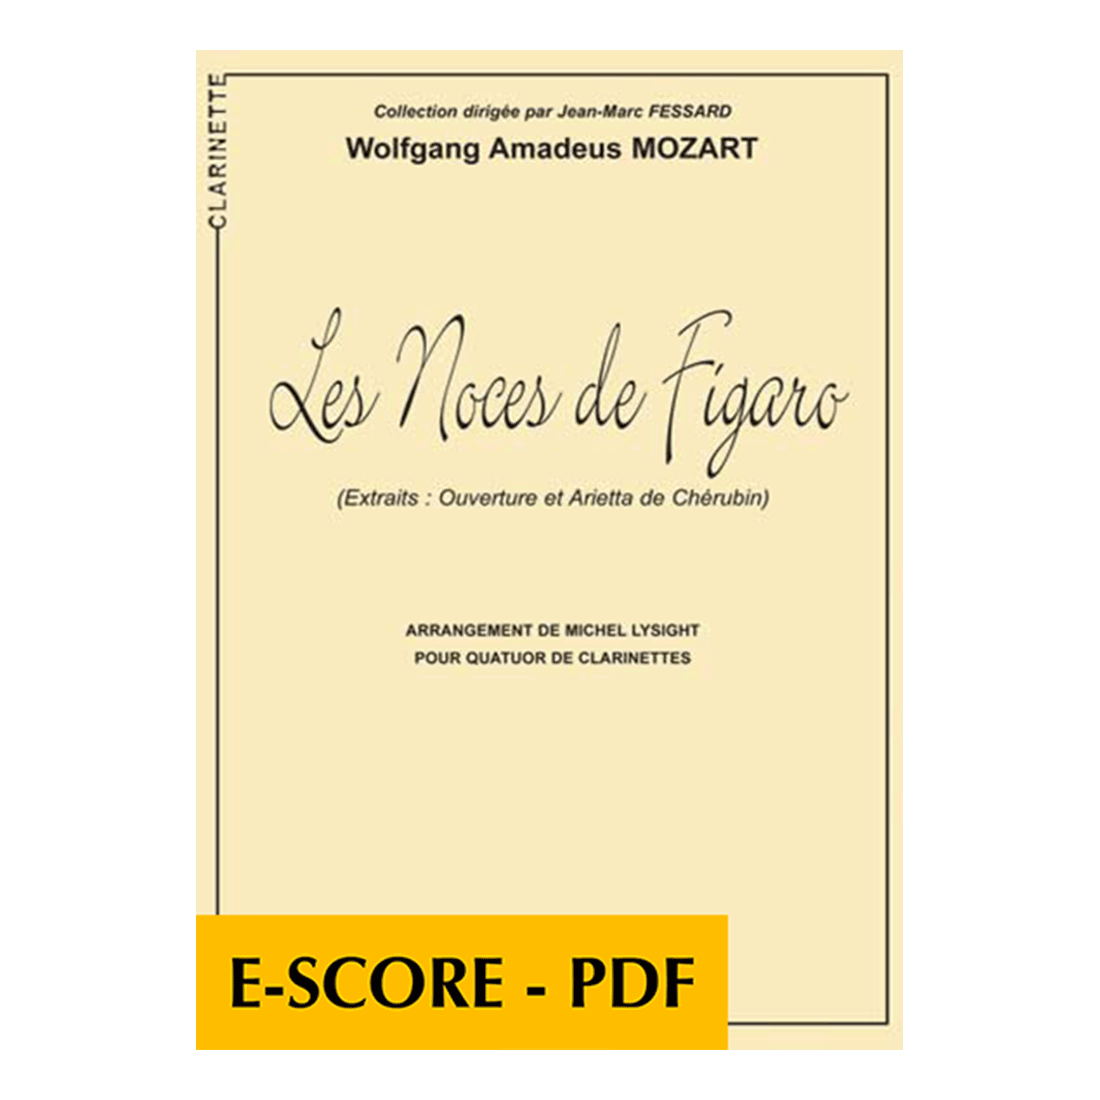 Die Hochzeit des Figaro KV 492 für 4 Klarinetten - E-score PDF